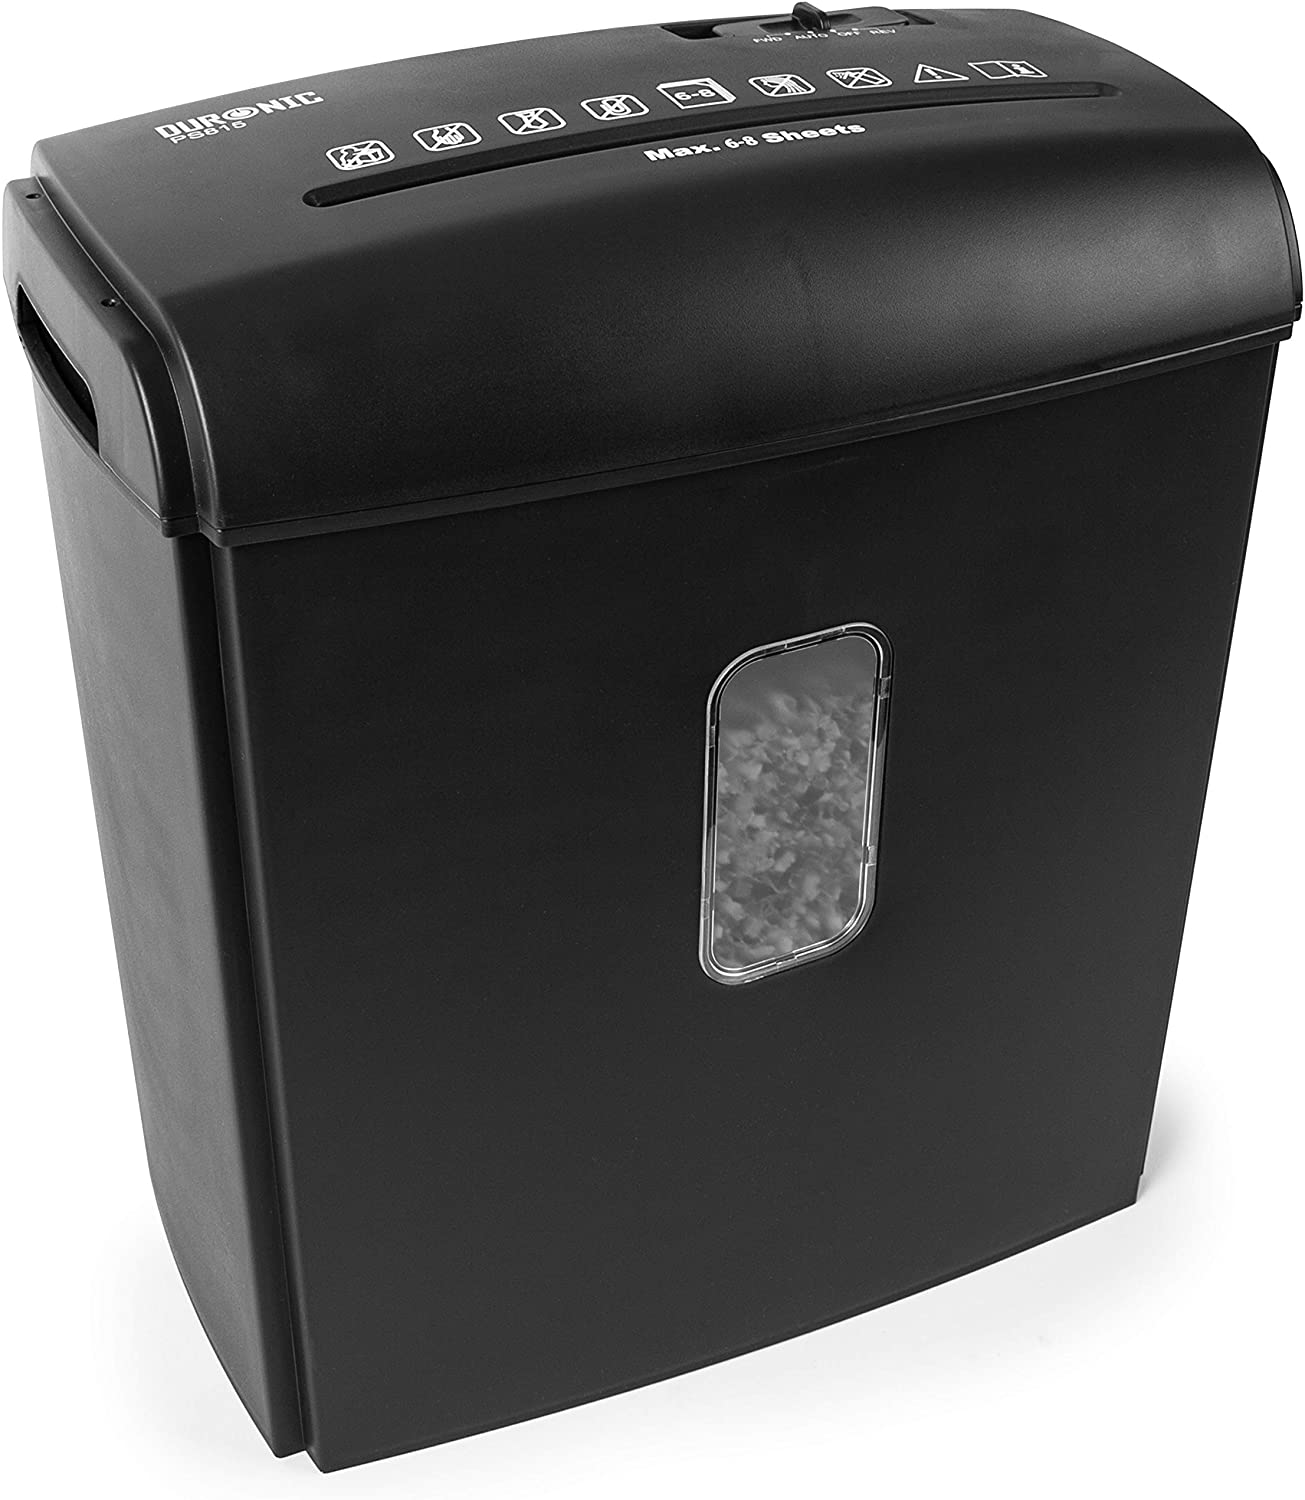 DURONIC PS815 Schredder Schwarz Kreuzschnitt 250W Blatt 8X Elektrisch | A4 15 L | Behälter | Aktenvernichter, Reißwolf